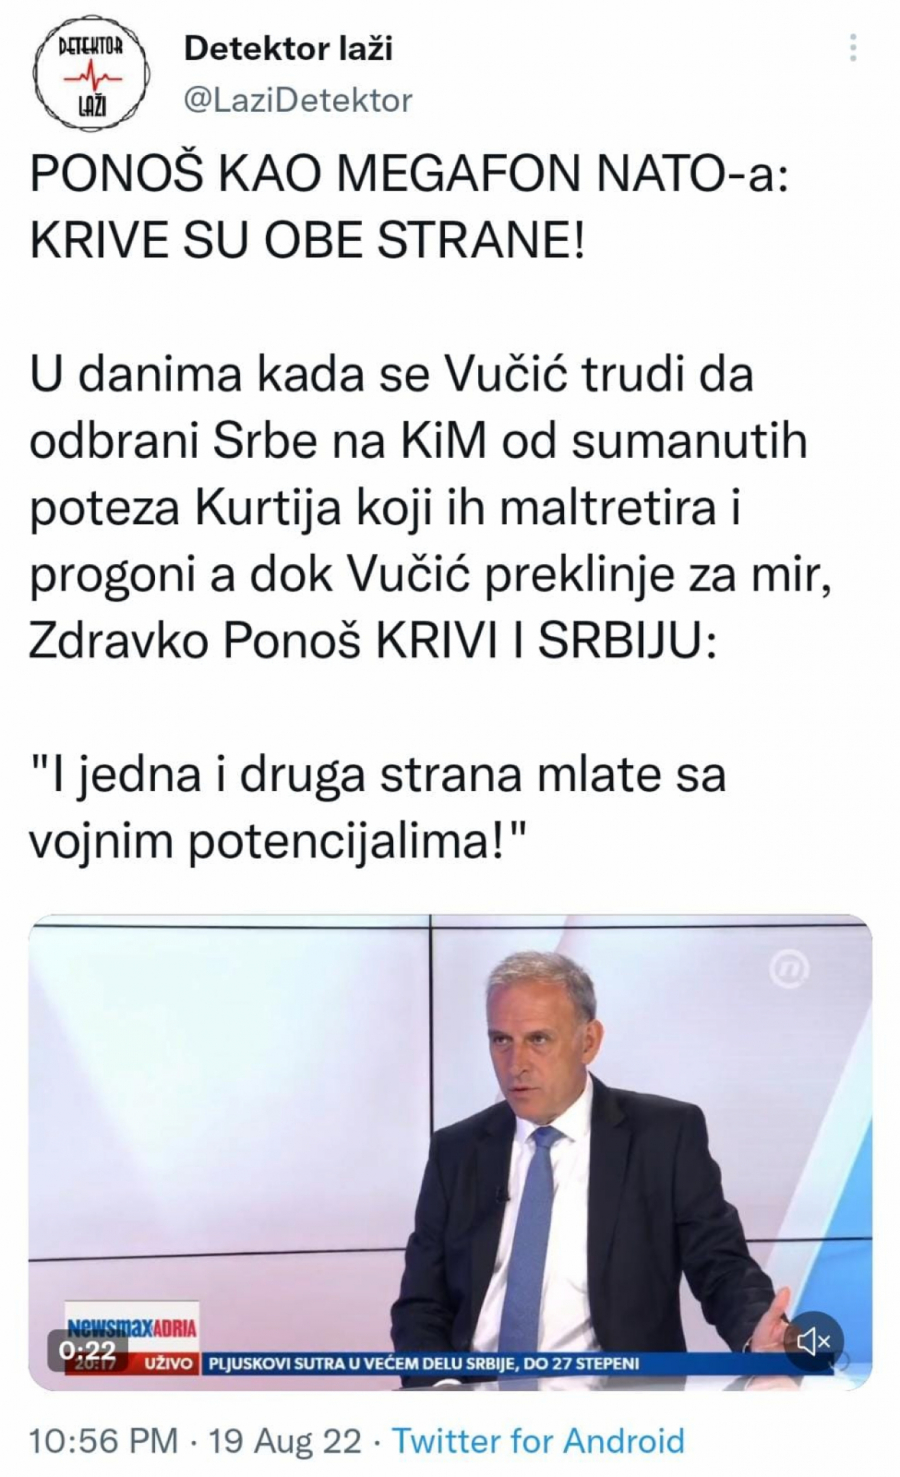 PONOŠ KAO MEGAFON NATO-A: Dok se Vučić trudi da odbrani Srbe na KiM, Zdravko krivi Srbiju! (VIDEO)